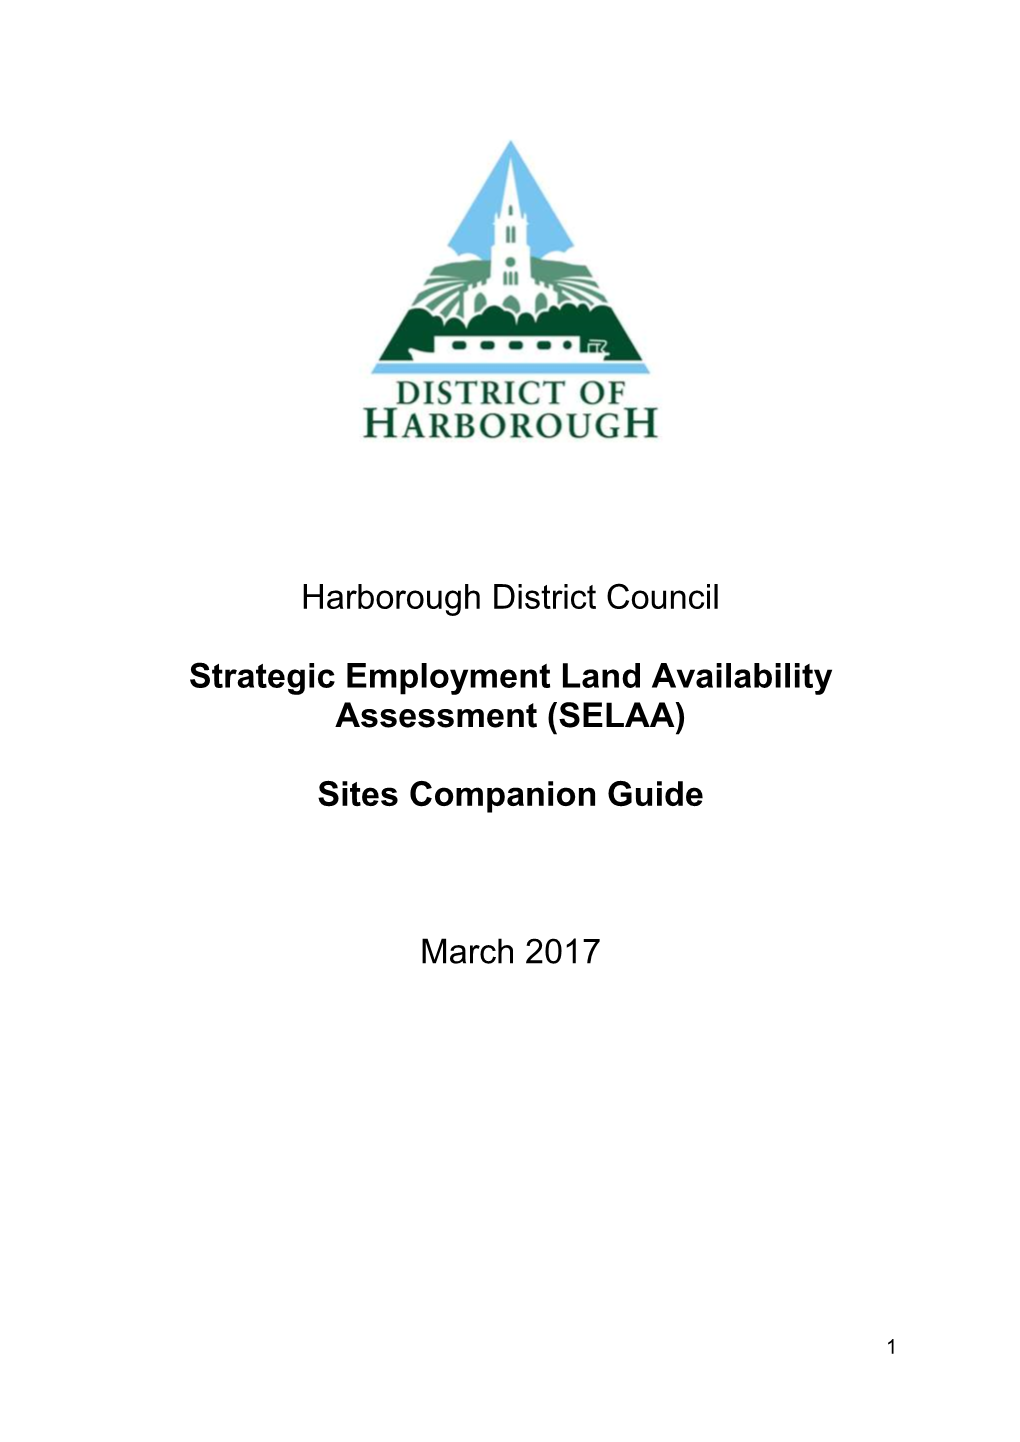 Harborough District Council Strategic Employment Land Availability